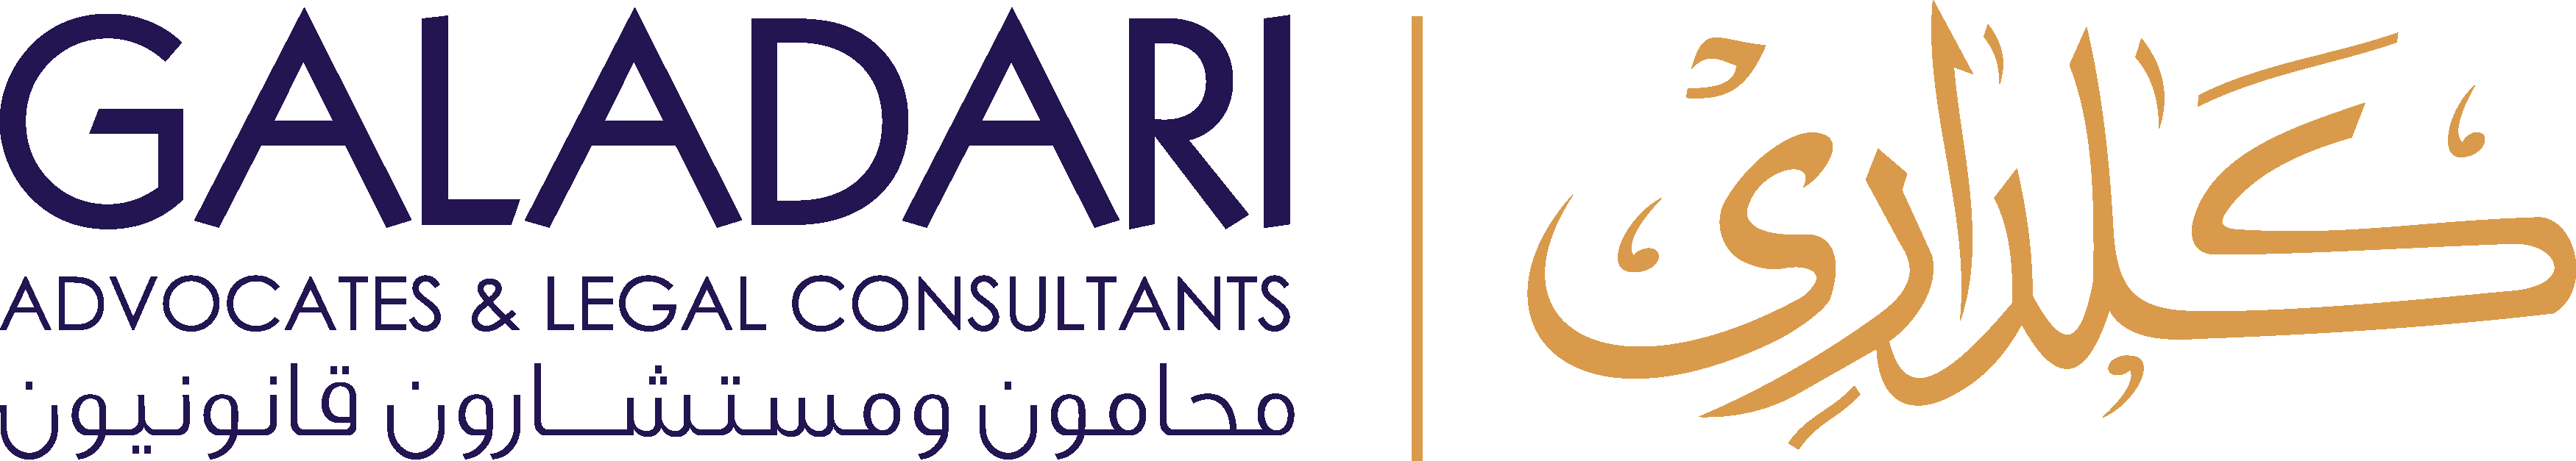 Galadari, Advocates & Legal Consultants logo